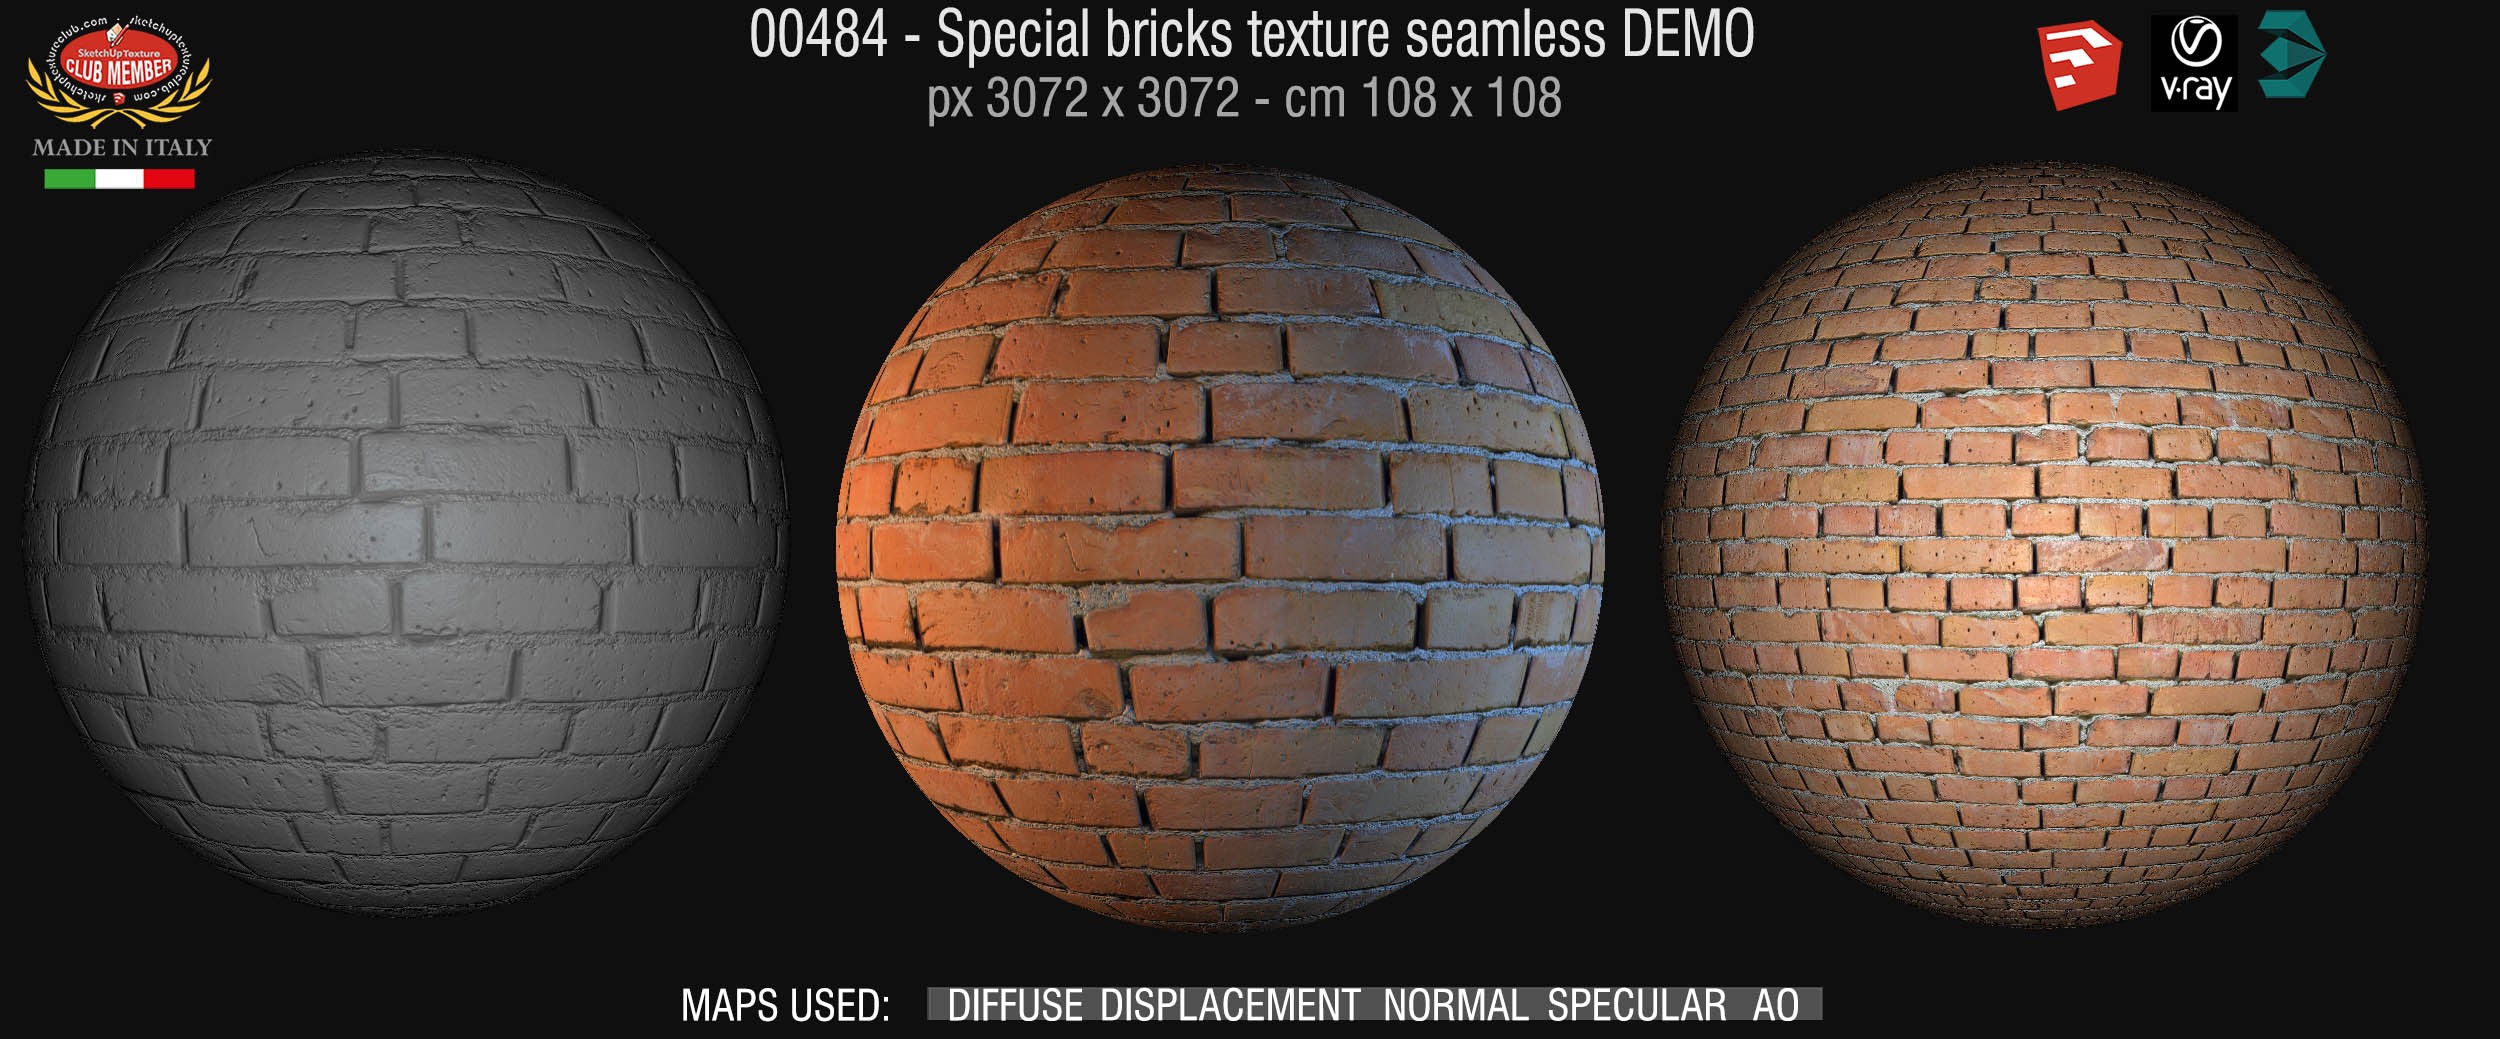 00484 Special bricks texture seamless + maps DEMO